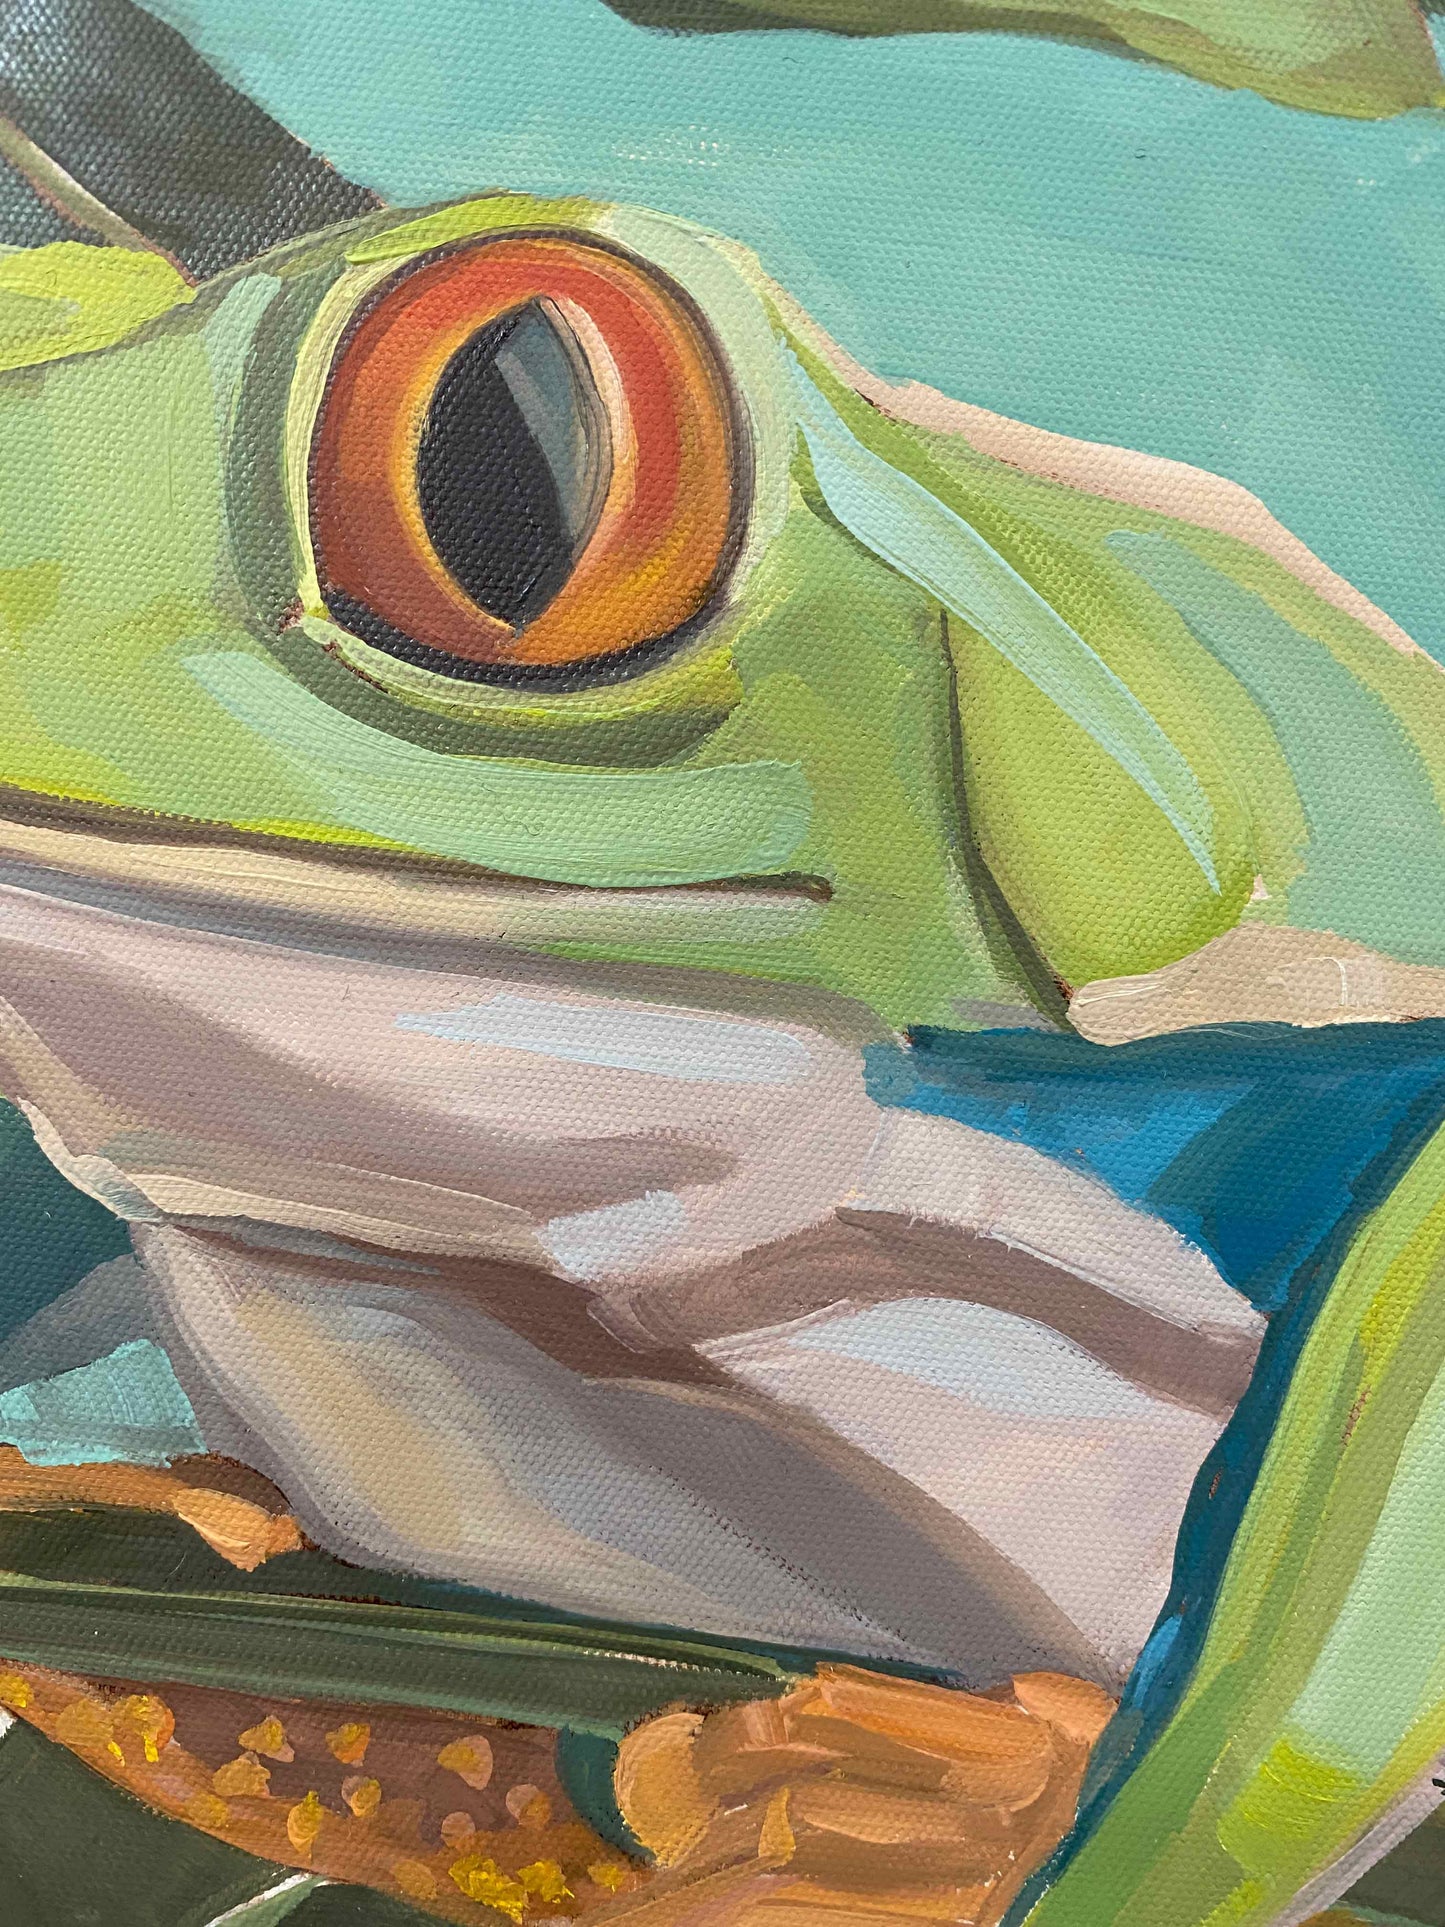 2022, roach frog Lotte 40 x 40 cm